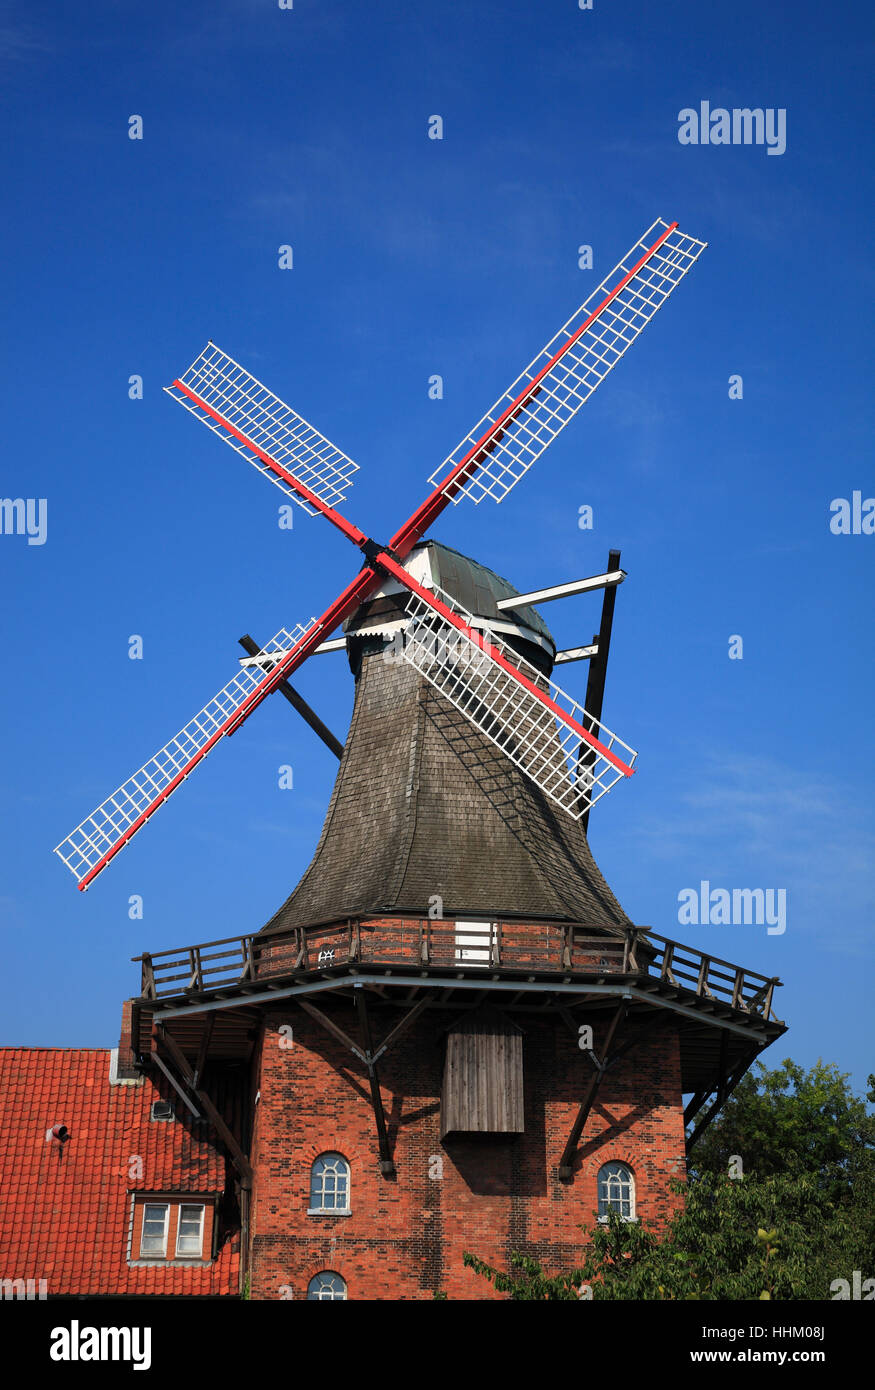 Aurora, Windmill Borstel, Altes Land, Baja Sajonia, Alemania, Europa Foto de stock